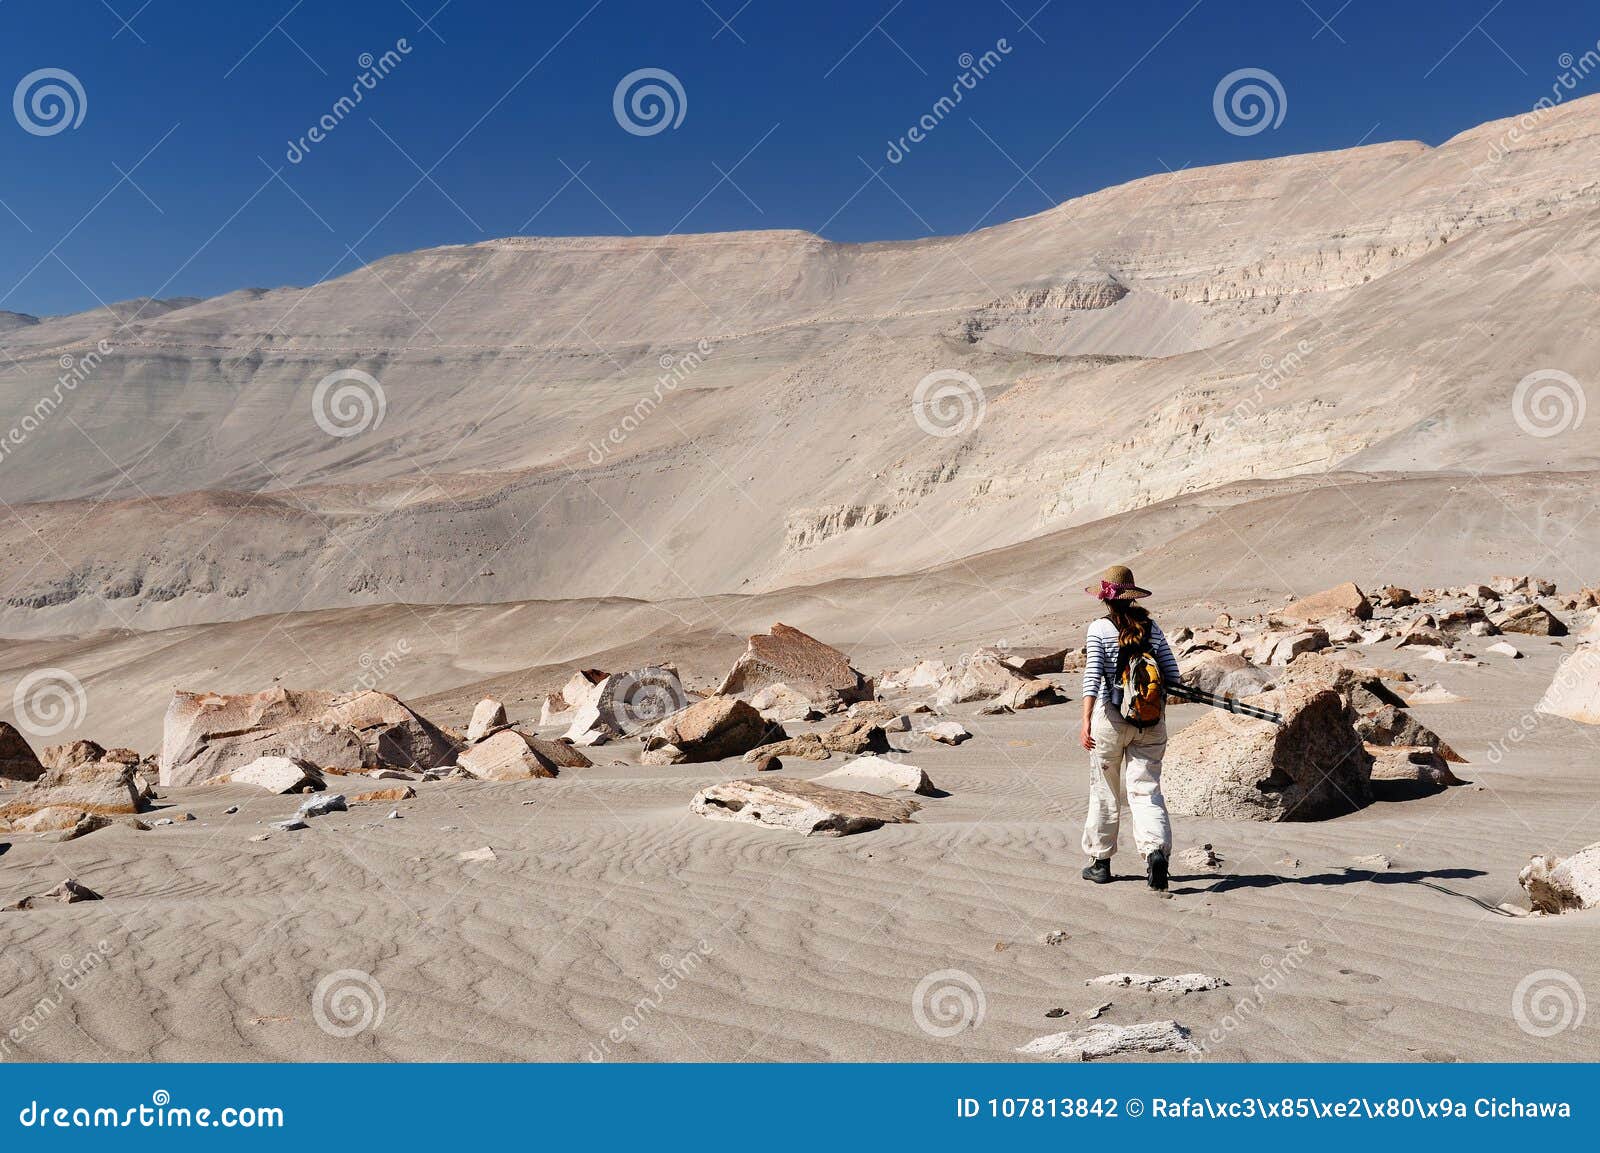 peru, tourist on the desert watching toro muerto petroglyphs